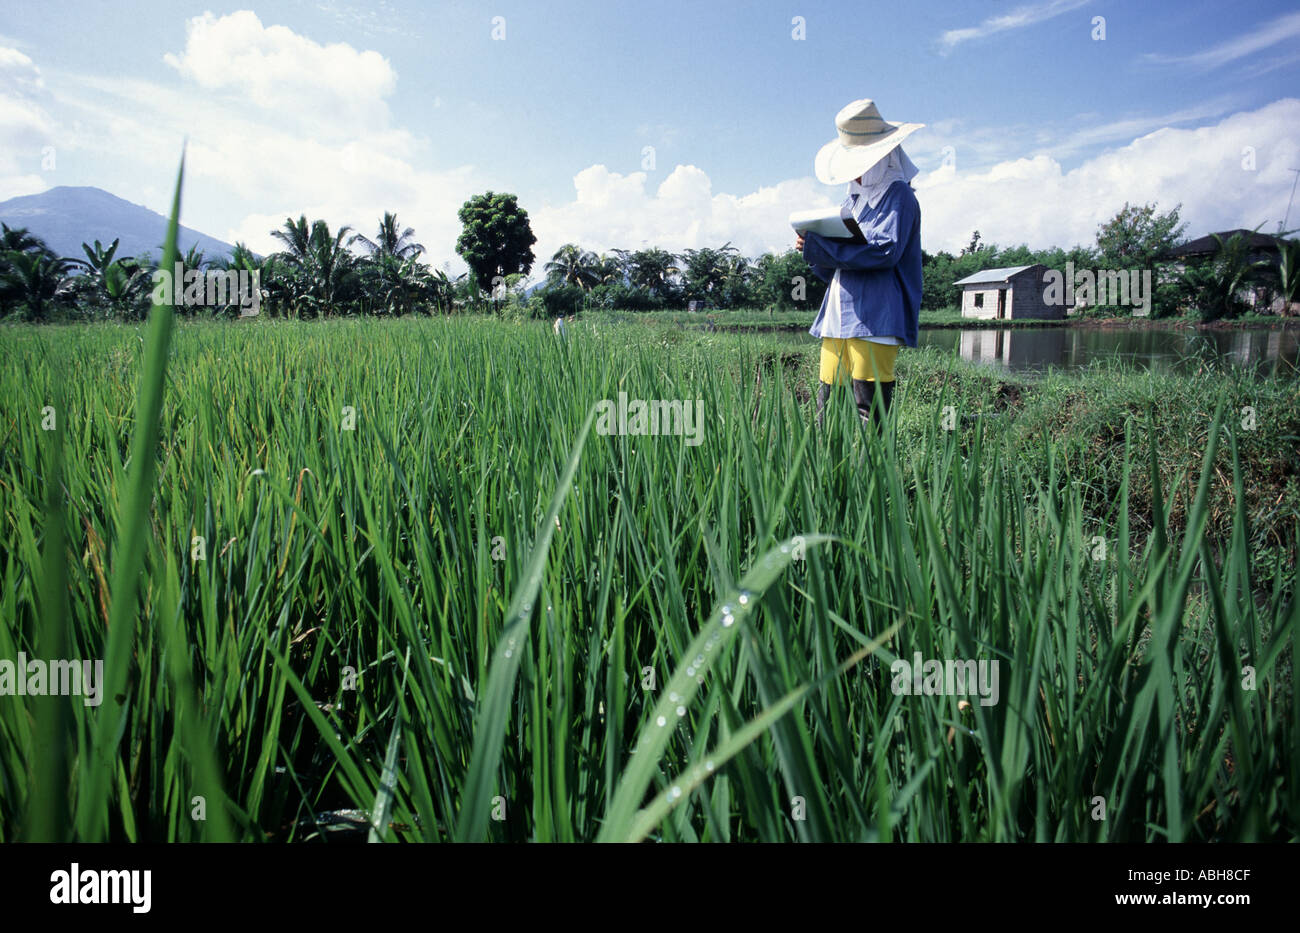 Les chercheurs qui étudient la culture du riz dans des expériences génétiques et de reproduction à l'IRRI Banque D'Images